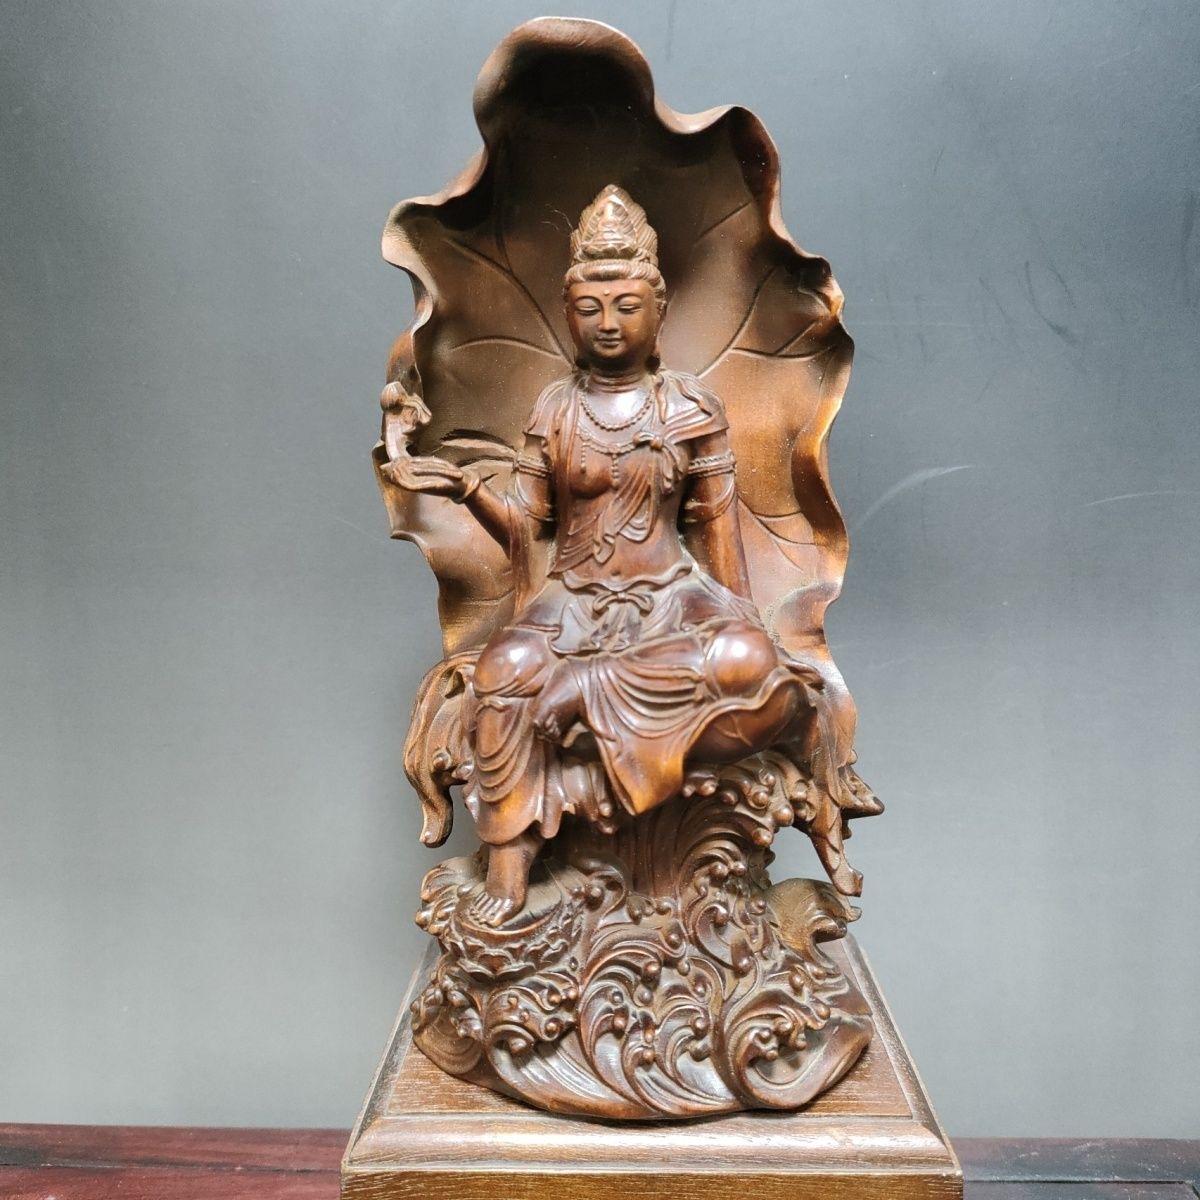 Diese chinesische Buddha-Statue aus altem Holz, die auf einem Lotus sitzt, ist ein wirklich einzigartiges und besonderes Sammlerstück.  

Details zur Buddha-Statue:
MATERIAL: Buchsbaum
Höhe: 15cm
Durchmesser: 8cm
Gewicht: 176 g
Mit Ursprung in